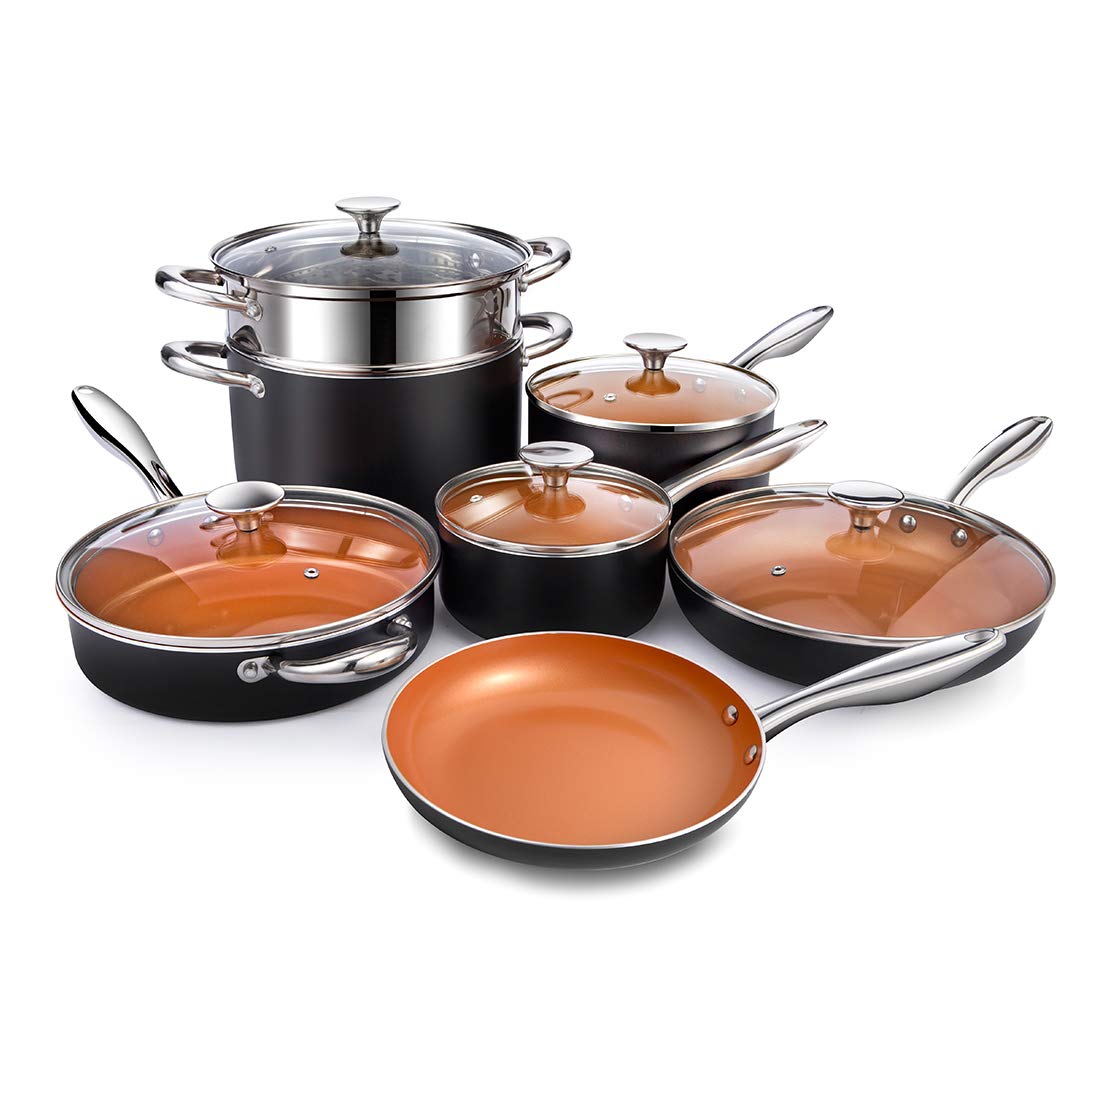 MICHELANGELO Nonstick Copper Pots and Pans Set, 12-Piece